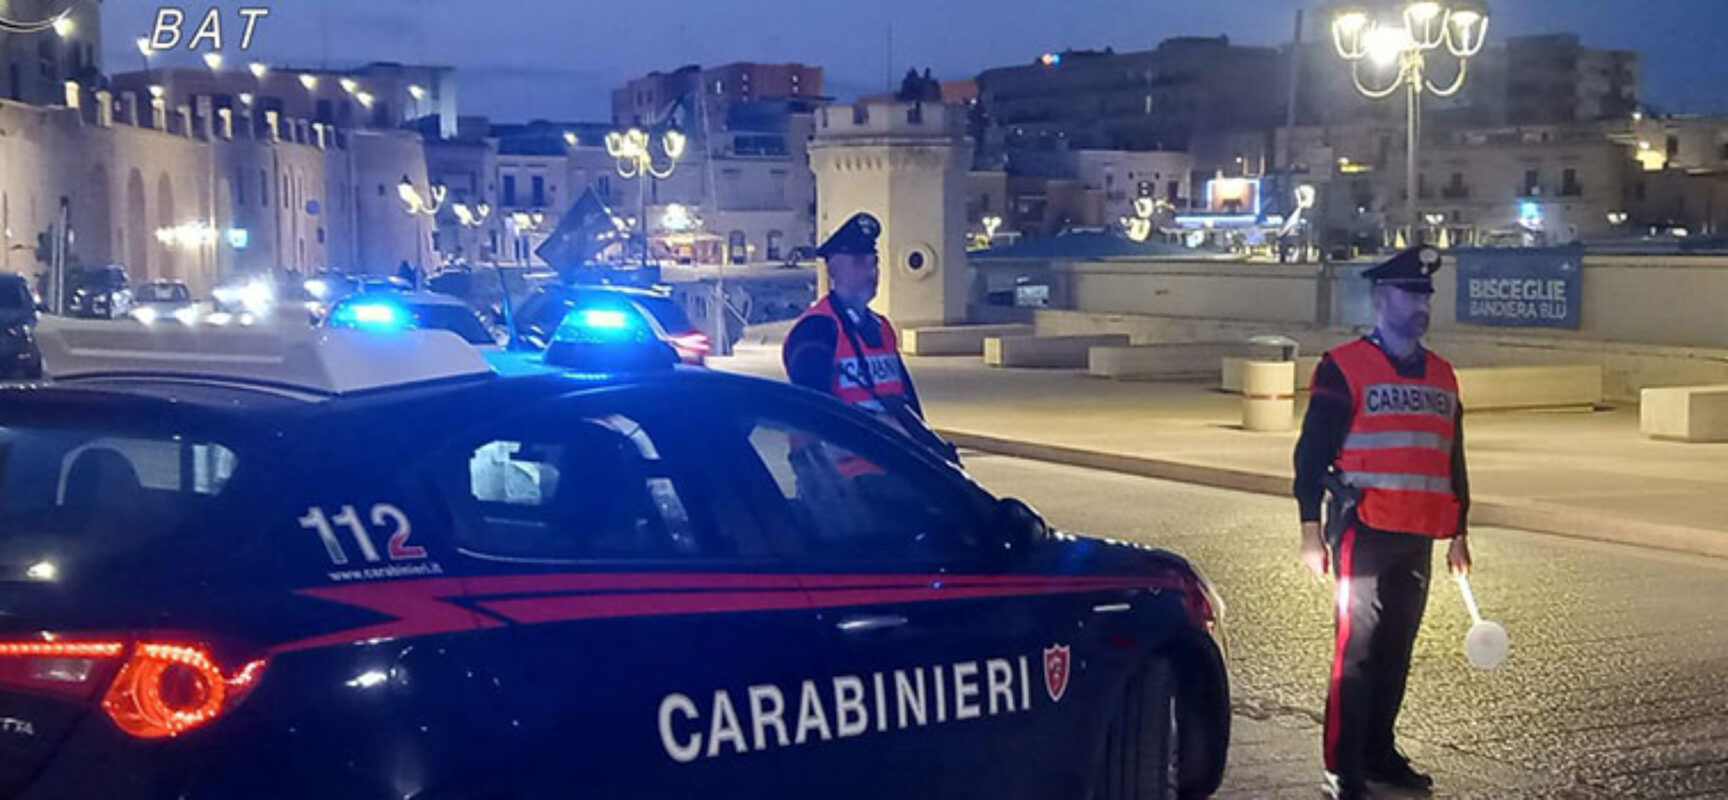 Controlli Carabinieri a Trani e Bisceglie, 103 veicoli fermati, 4 persone segnalate con stupefacenti